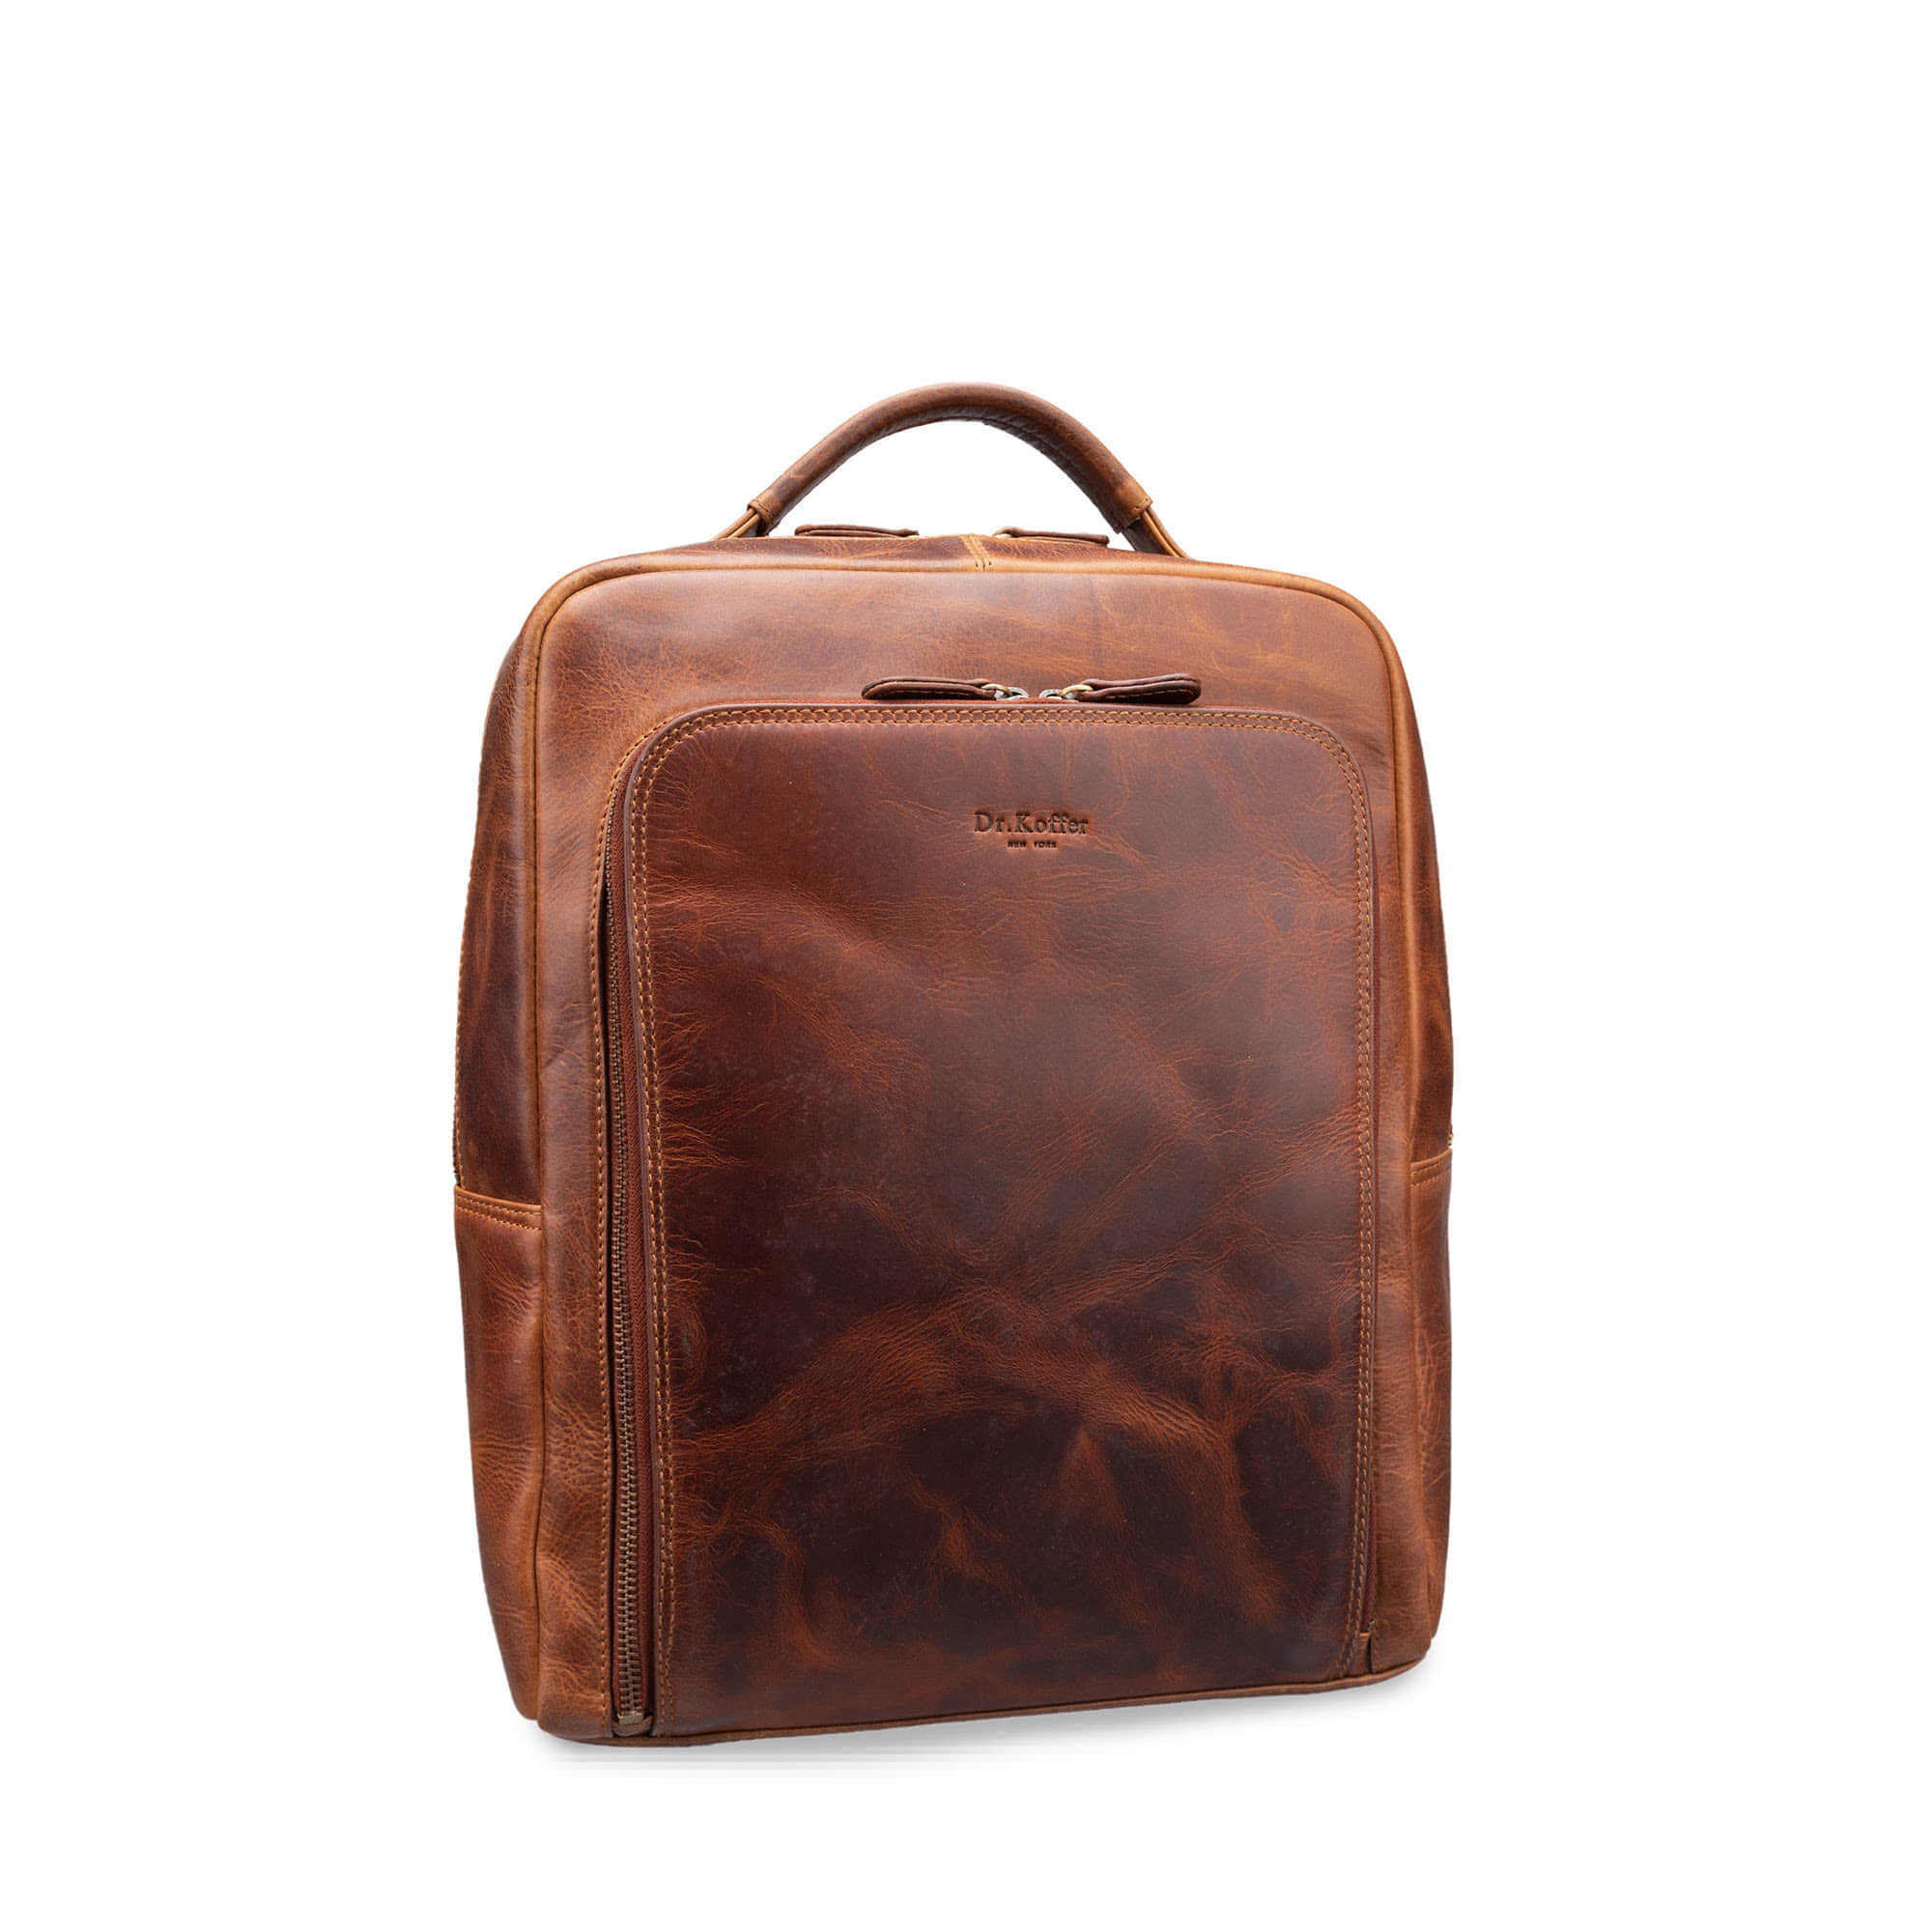 Др.Коффер B402817-109-05 рюкзак, цвет коричневый - фото 1